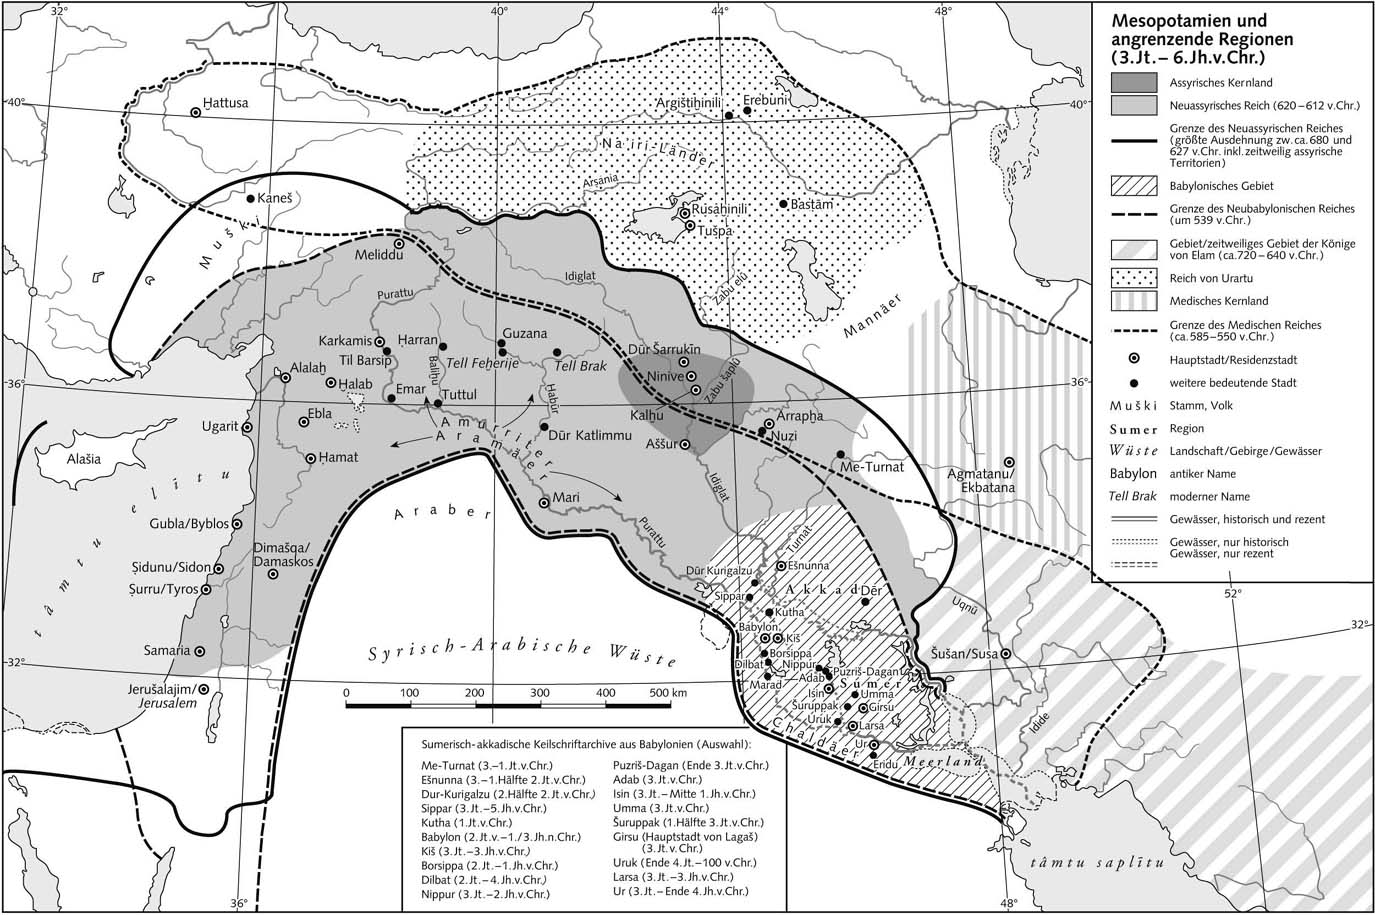 Месопотамия и прилегающие регионы (III тыс. - VI в. до н.э.)